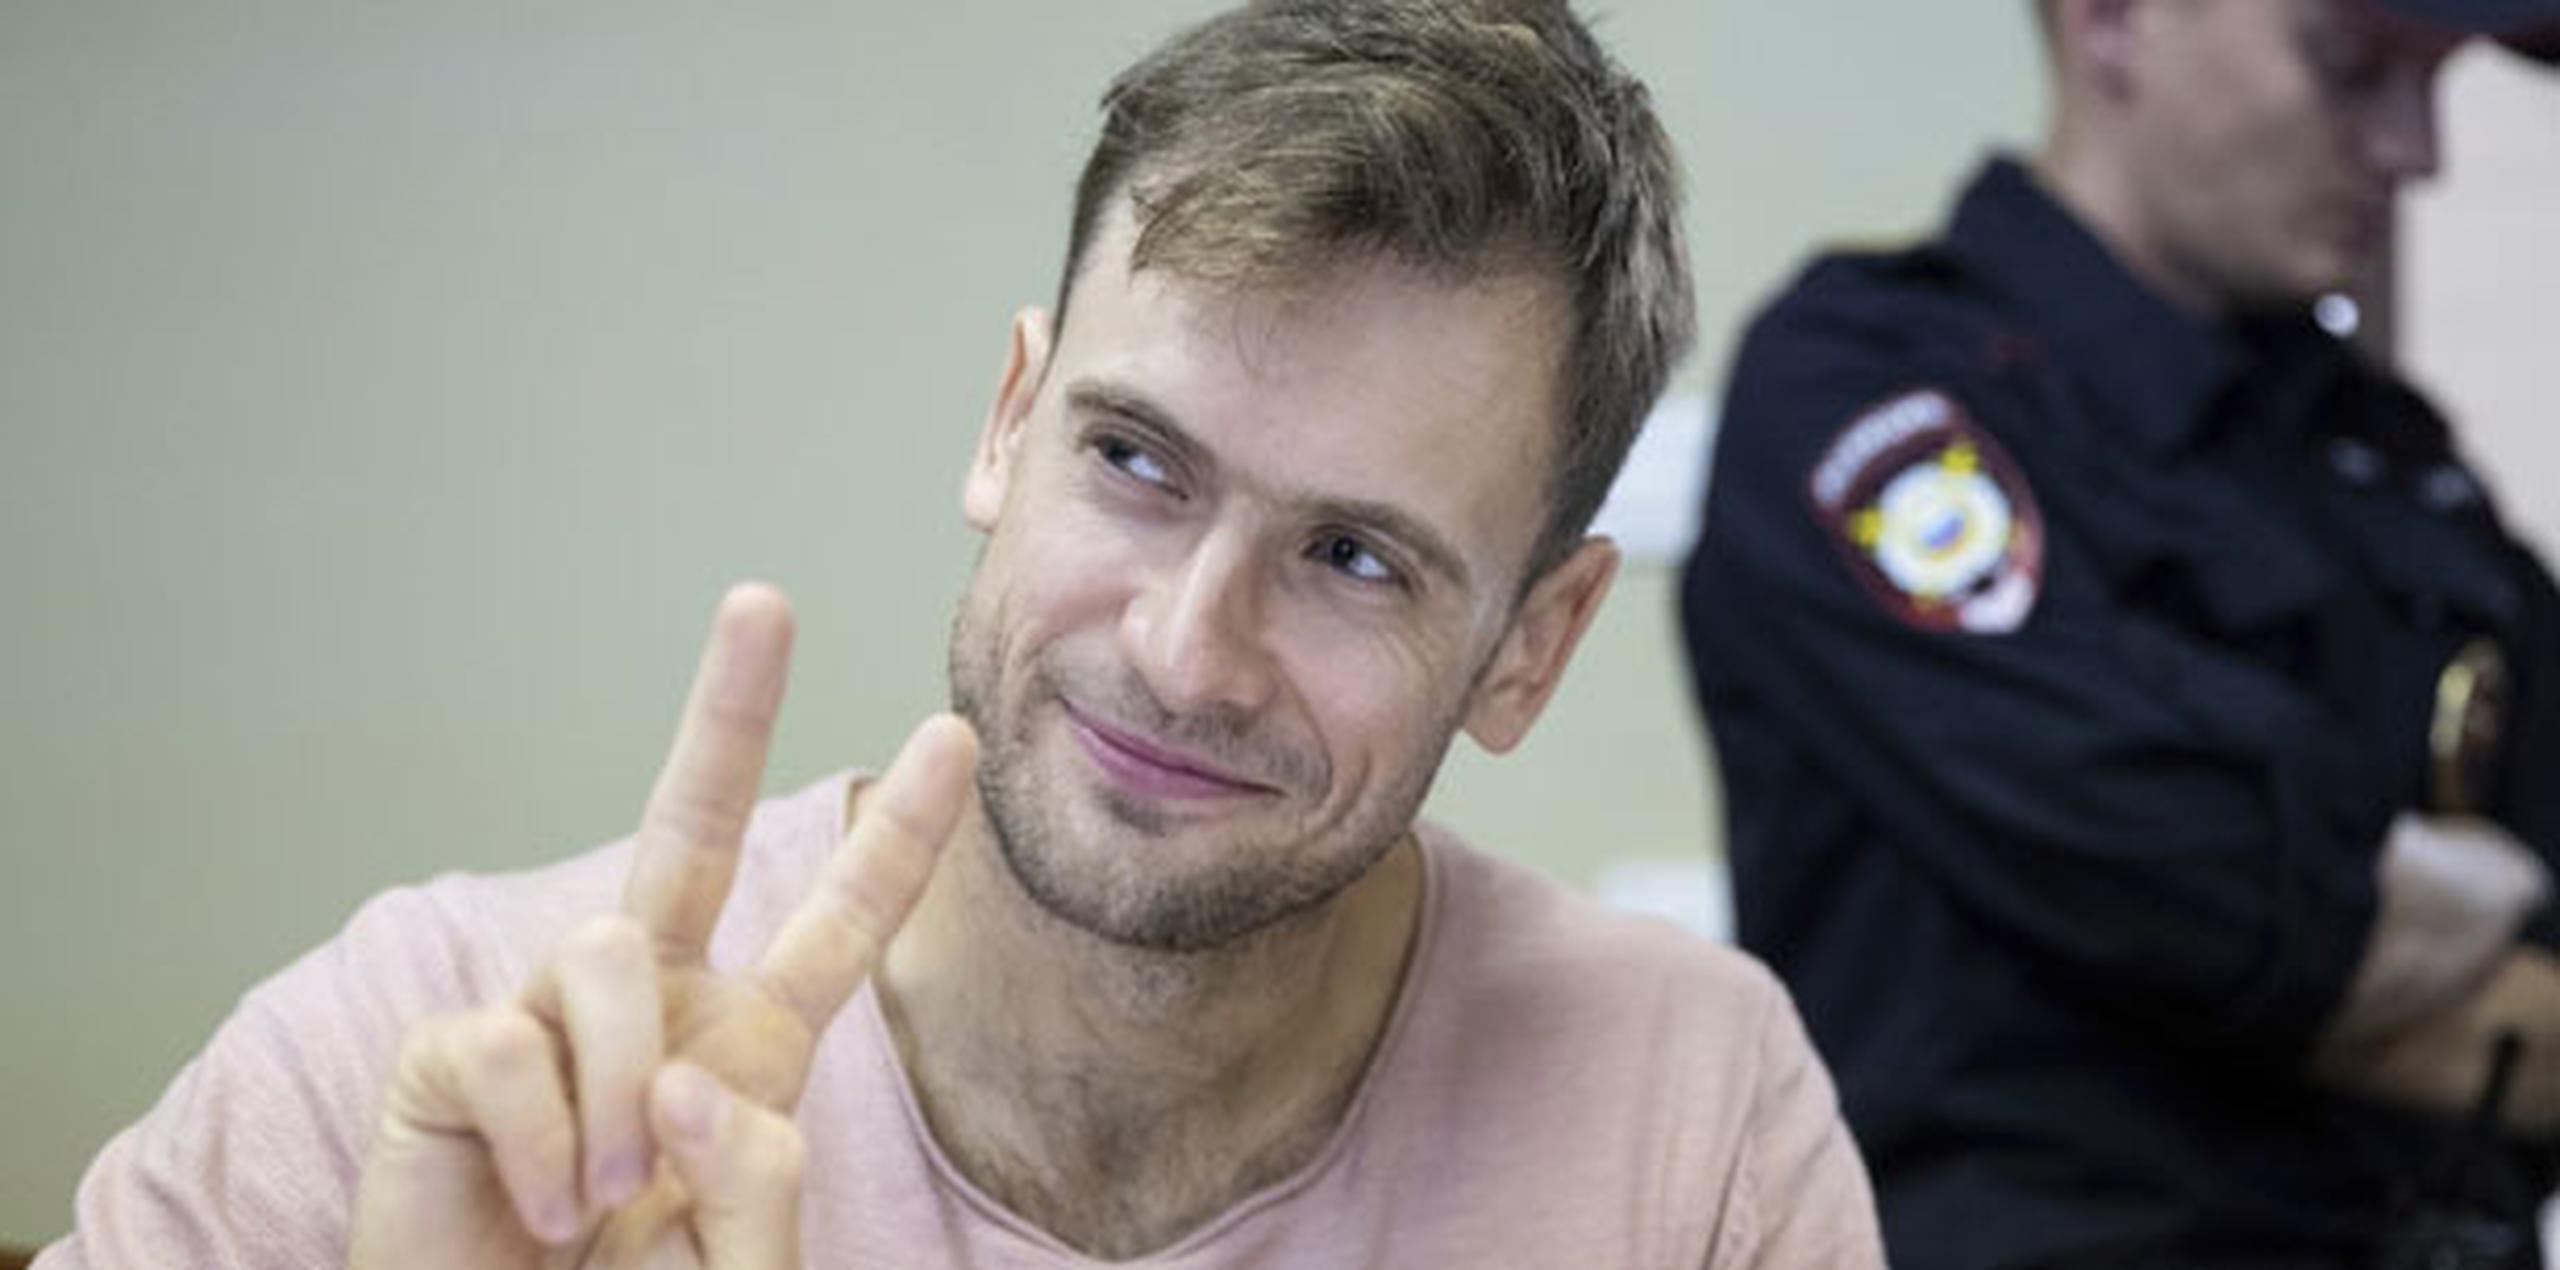 Verzilov, Nikulshina y otros dos integrantes de Pussy Riot cumplieron una sentencia de 15 días de cárcel tras protestar contra la policía en julio durante la final de la Copa del Mundo de fútbol. (AP)